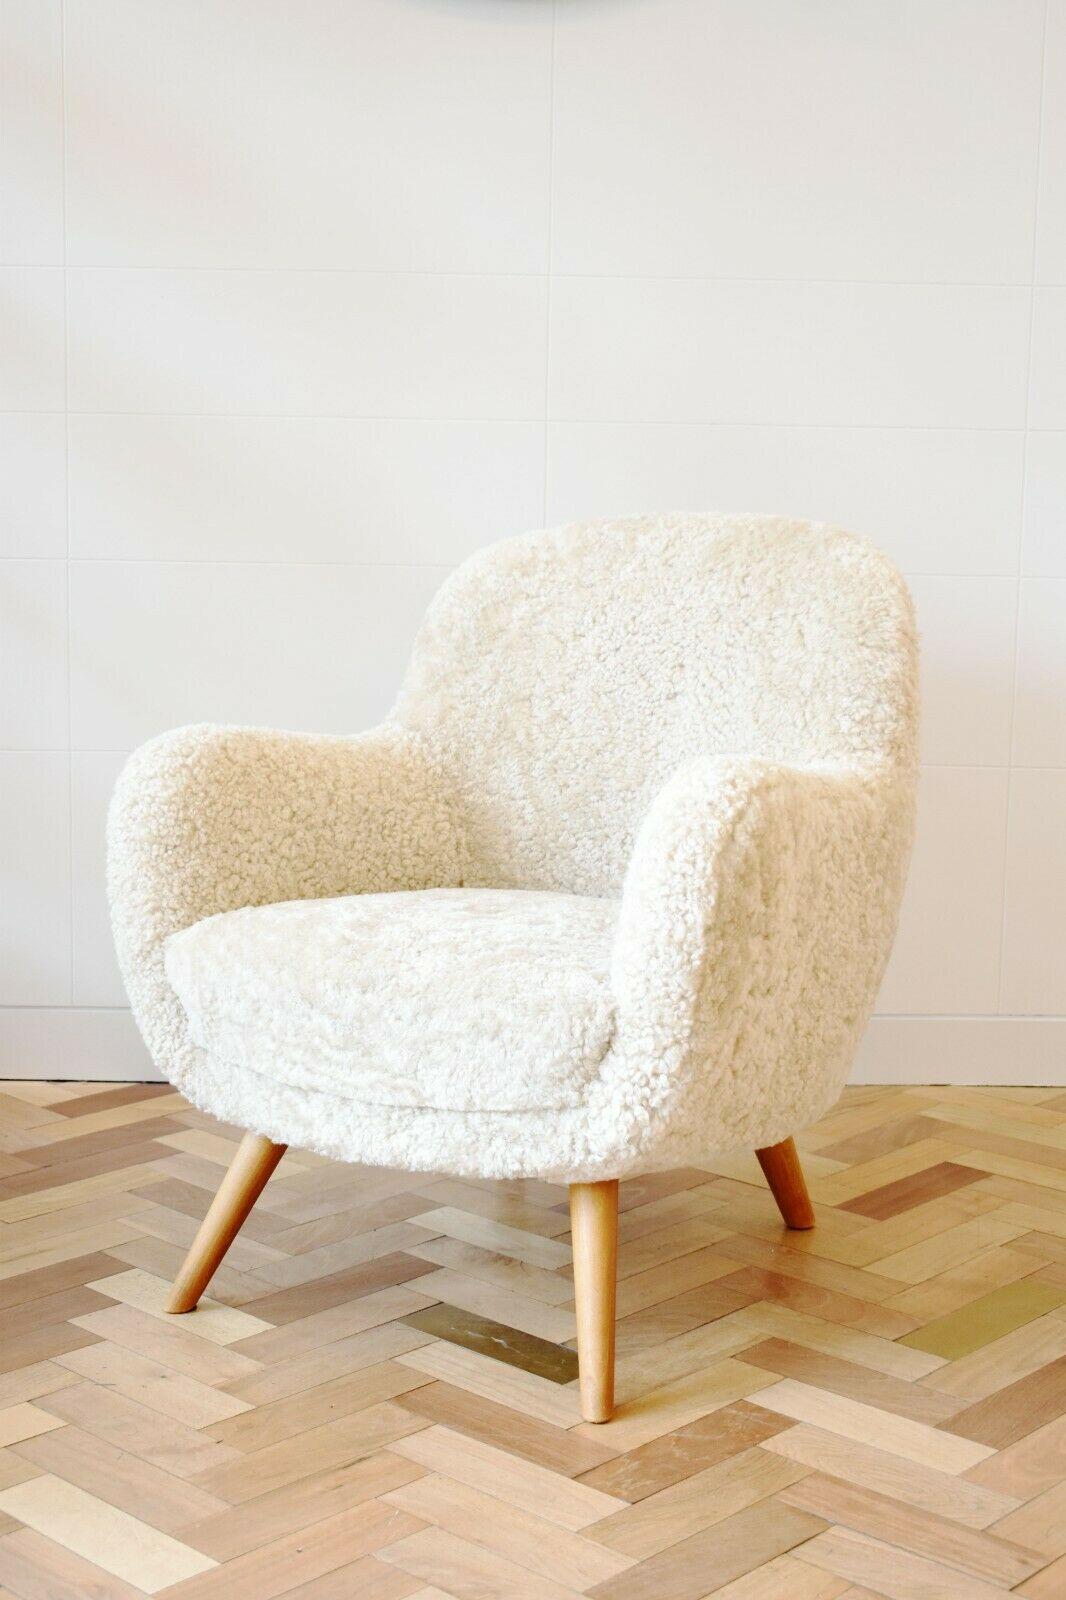 Ce magnifique fauteuil contemporain est fabriqué à la main exclusivement pour Antique Modern Mix au Royaume-Uni, à l'aide de méthodes traditionnelles et de peaux de mouton provenant de Scandinavie. 

Le cadre est en bois dur, percé et chevillé. La